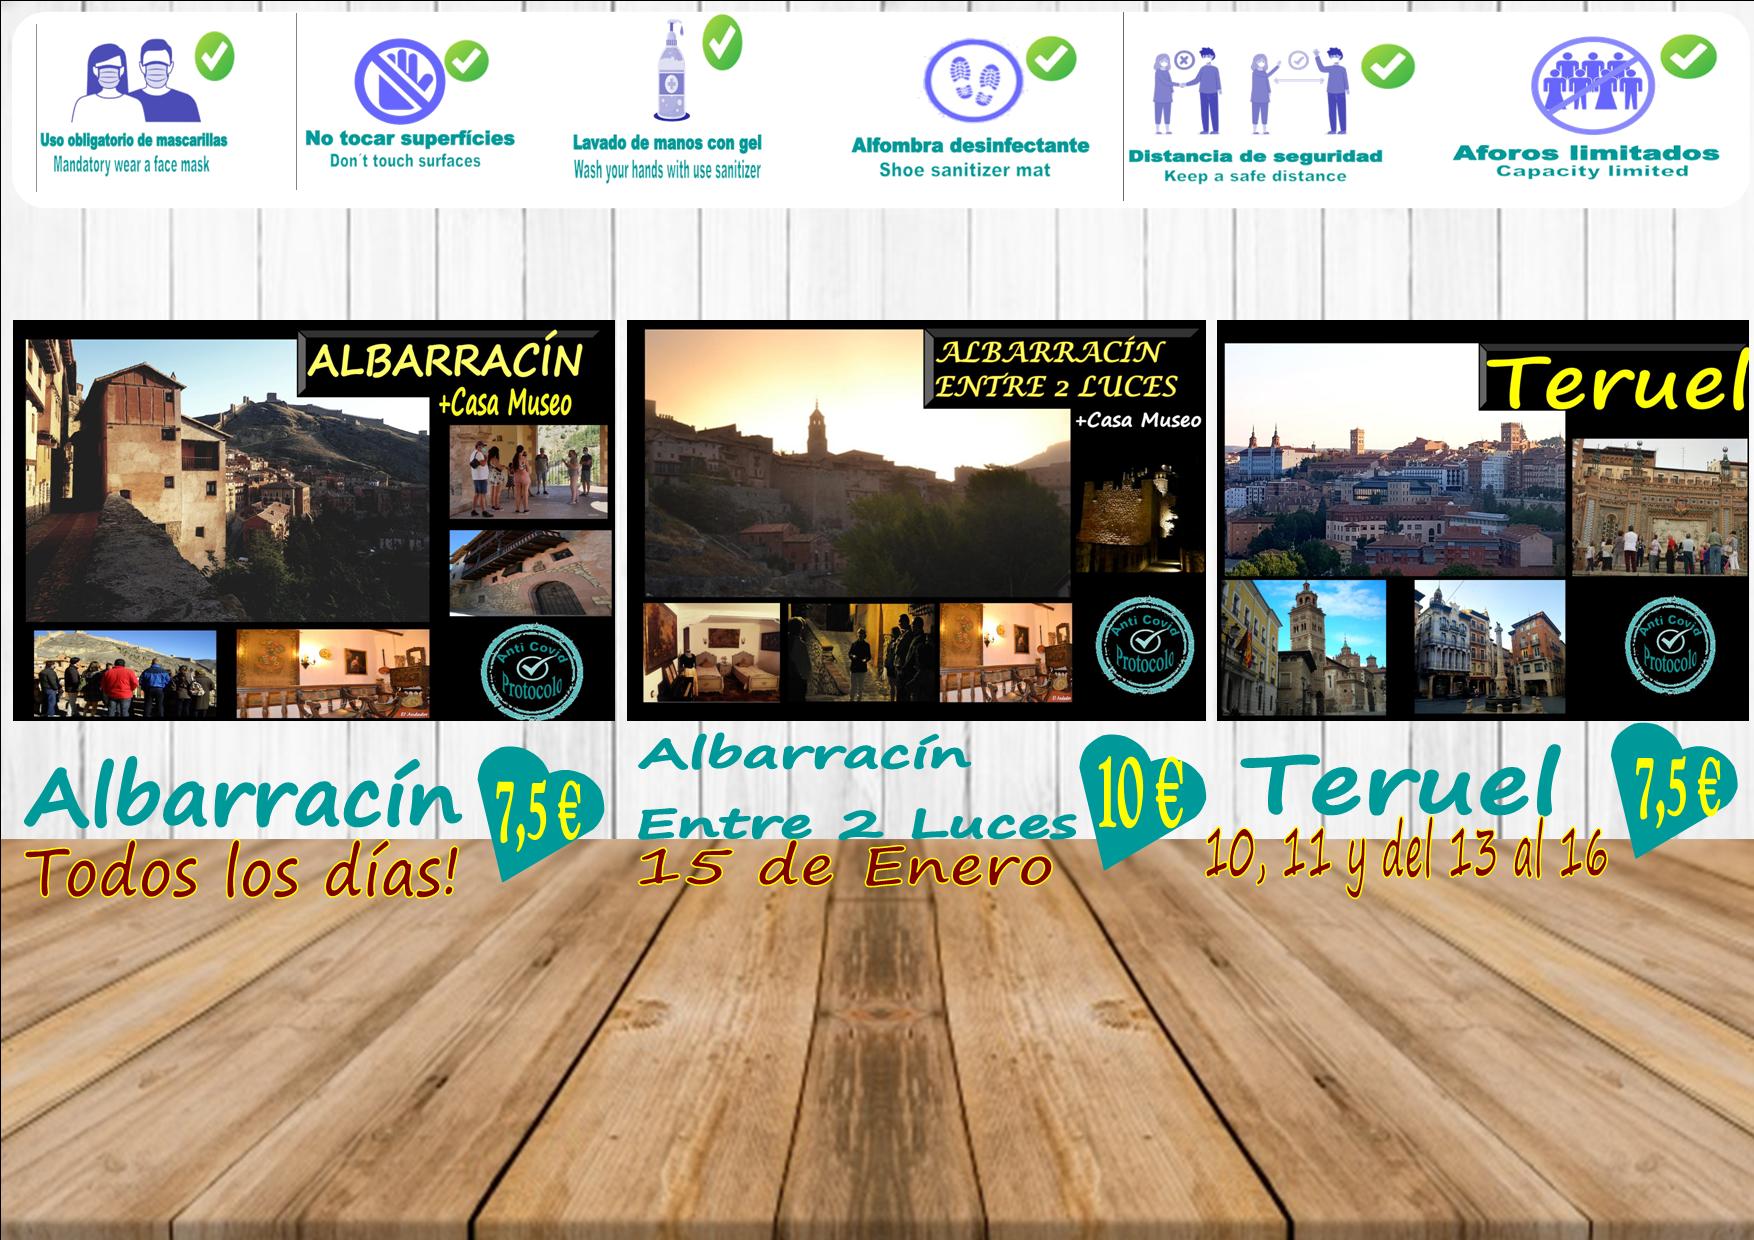 Esta semana, planes para visita guiada en Albarracín, Teruel y Albarracín Entre 2 Luces el Sábado!